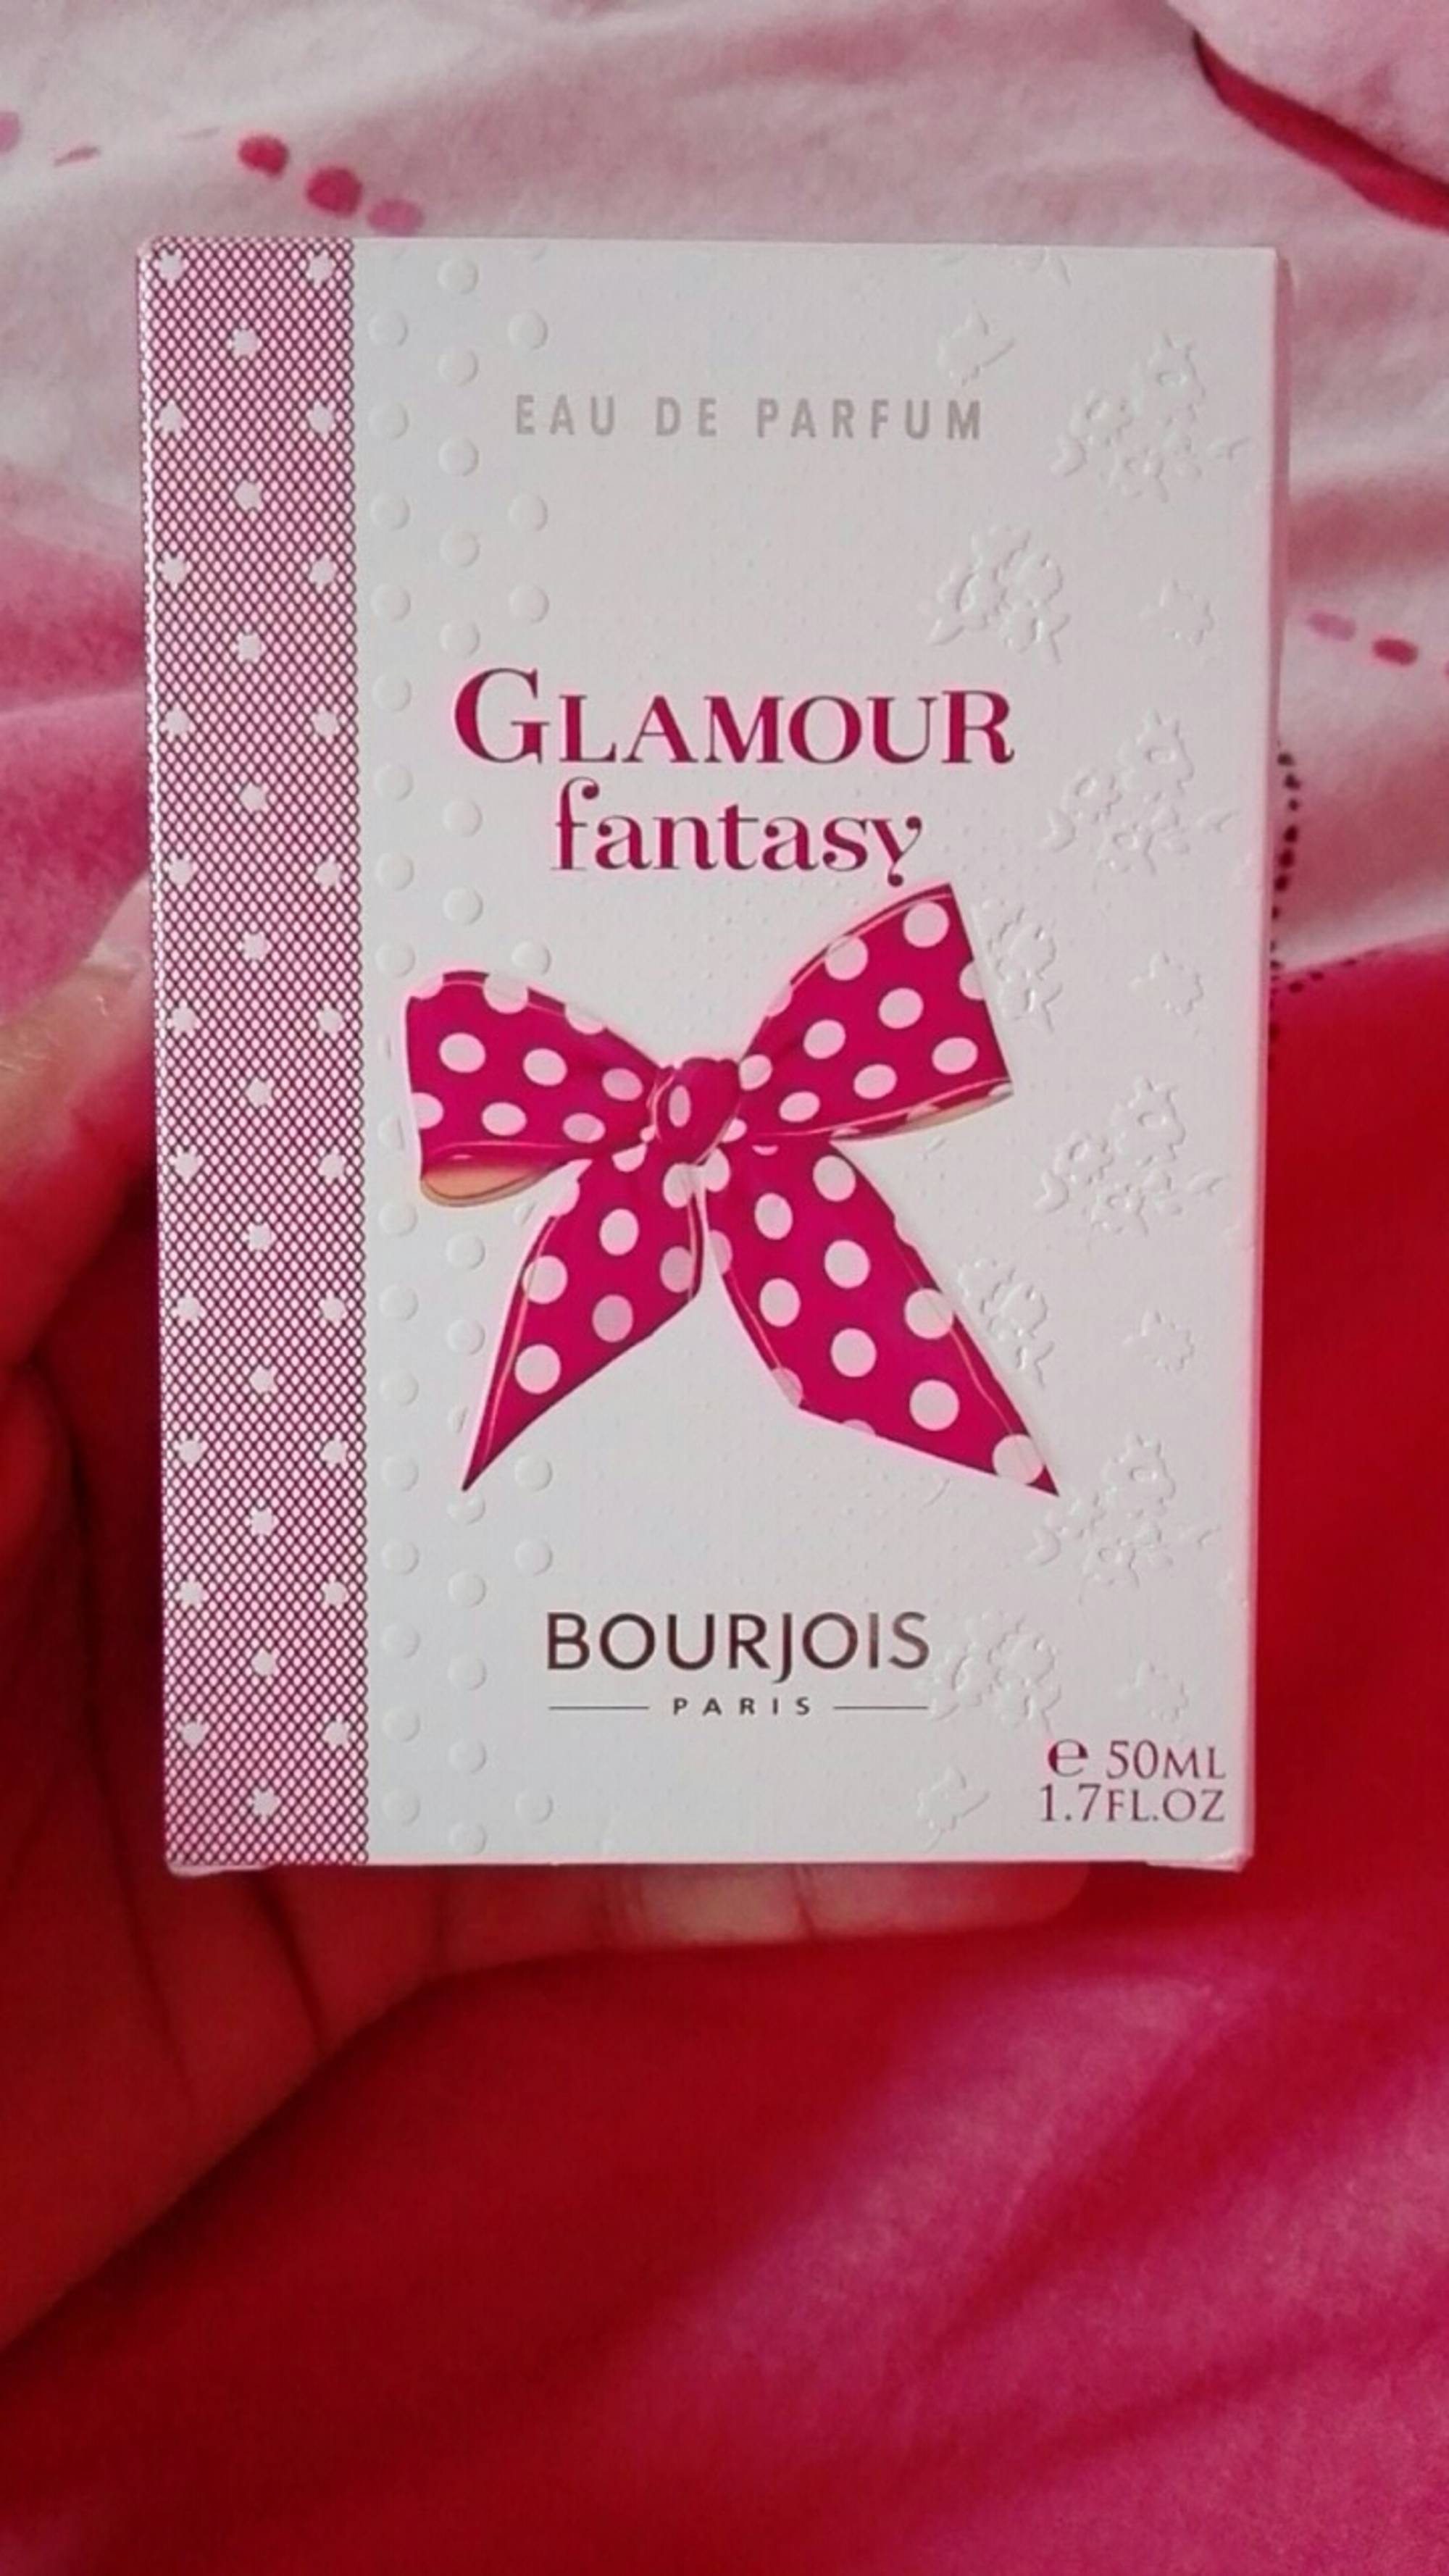 BOURJOIS - Glamour fantasy - Eau de parfum